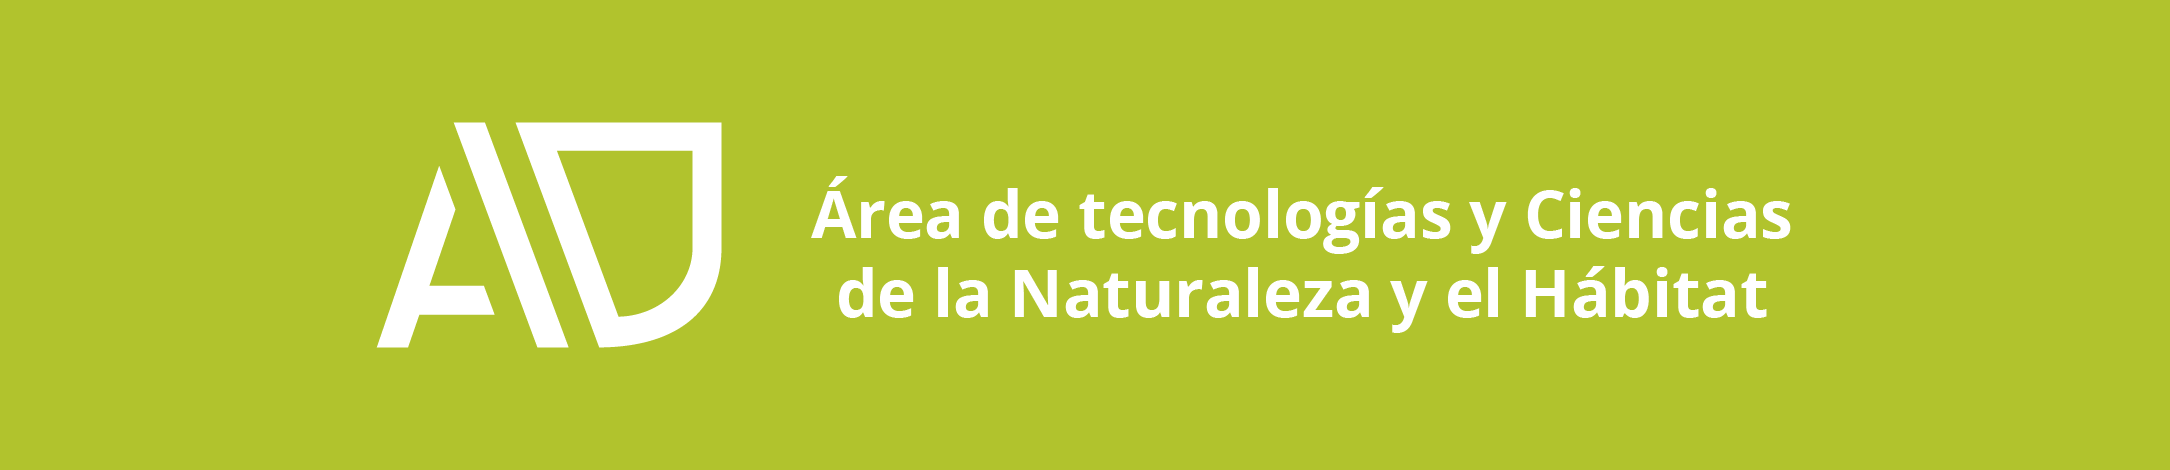 Área de tecnologías y Ciencias de la Naturaleza y el Hábitat